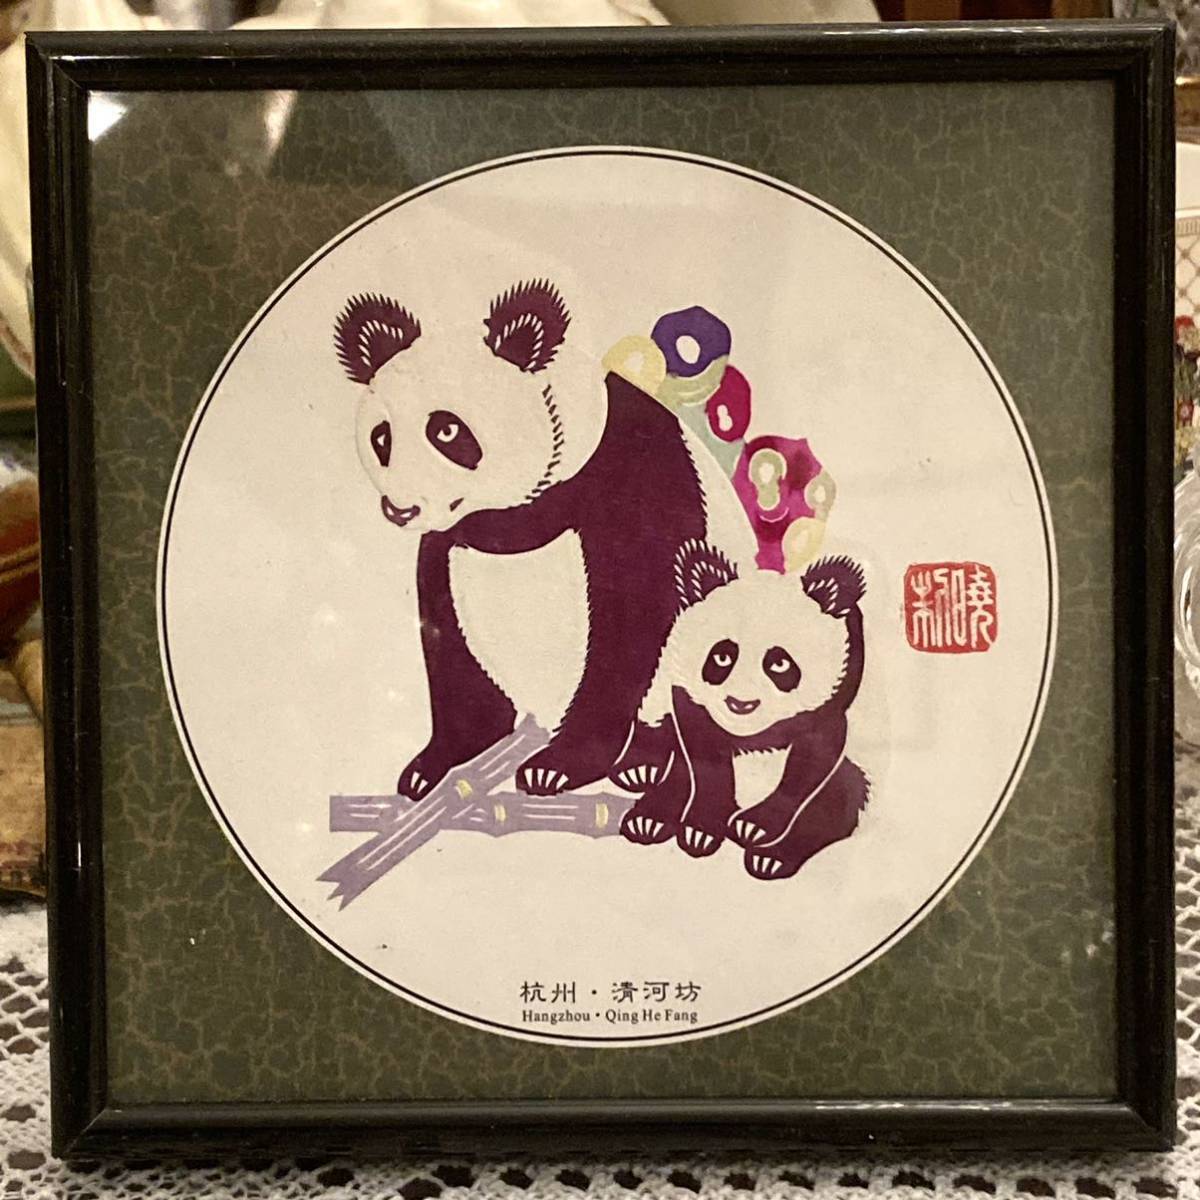 全新未使用的熊猫中国中国剪纸微型绘画手工工艺带框物品 A, 艺术品, 绘画, 比江, 基里